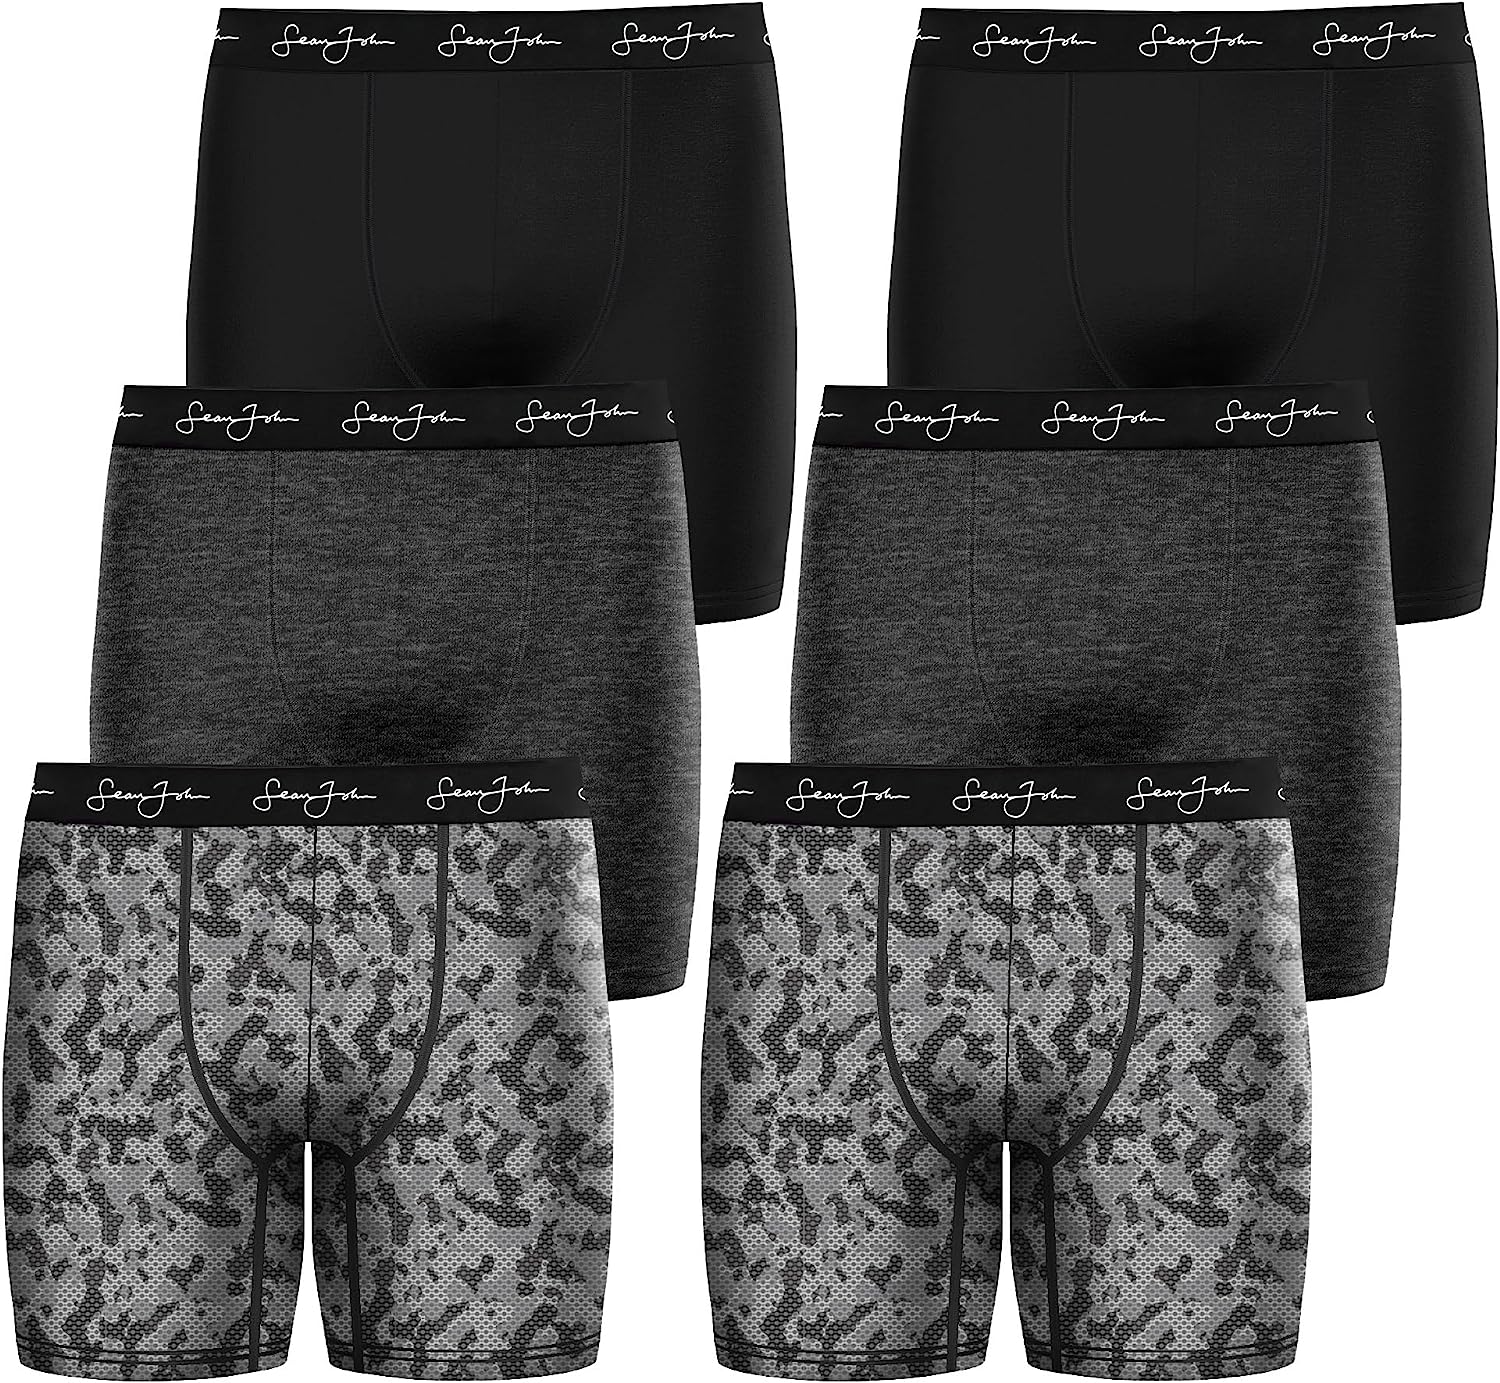 Sean John Mens Boxer Briefs Breathable Cotton Underwear for Men - 6 Pack -  Cotton Stretch Mens Underwear